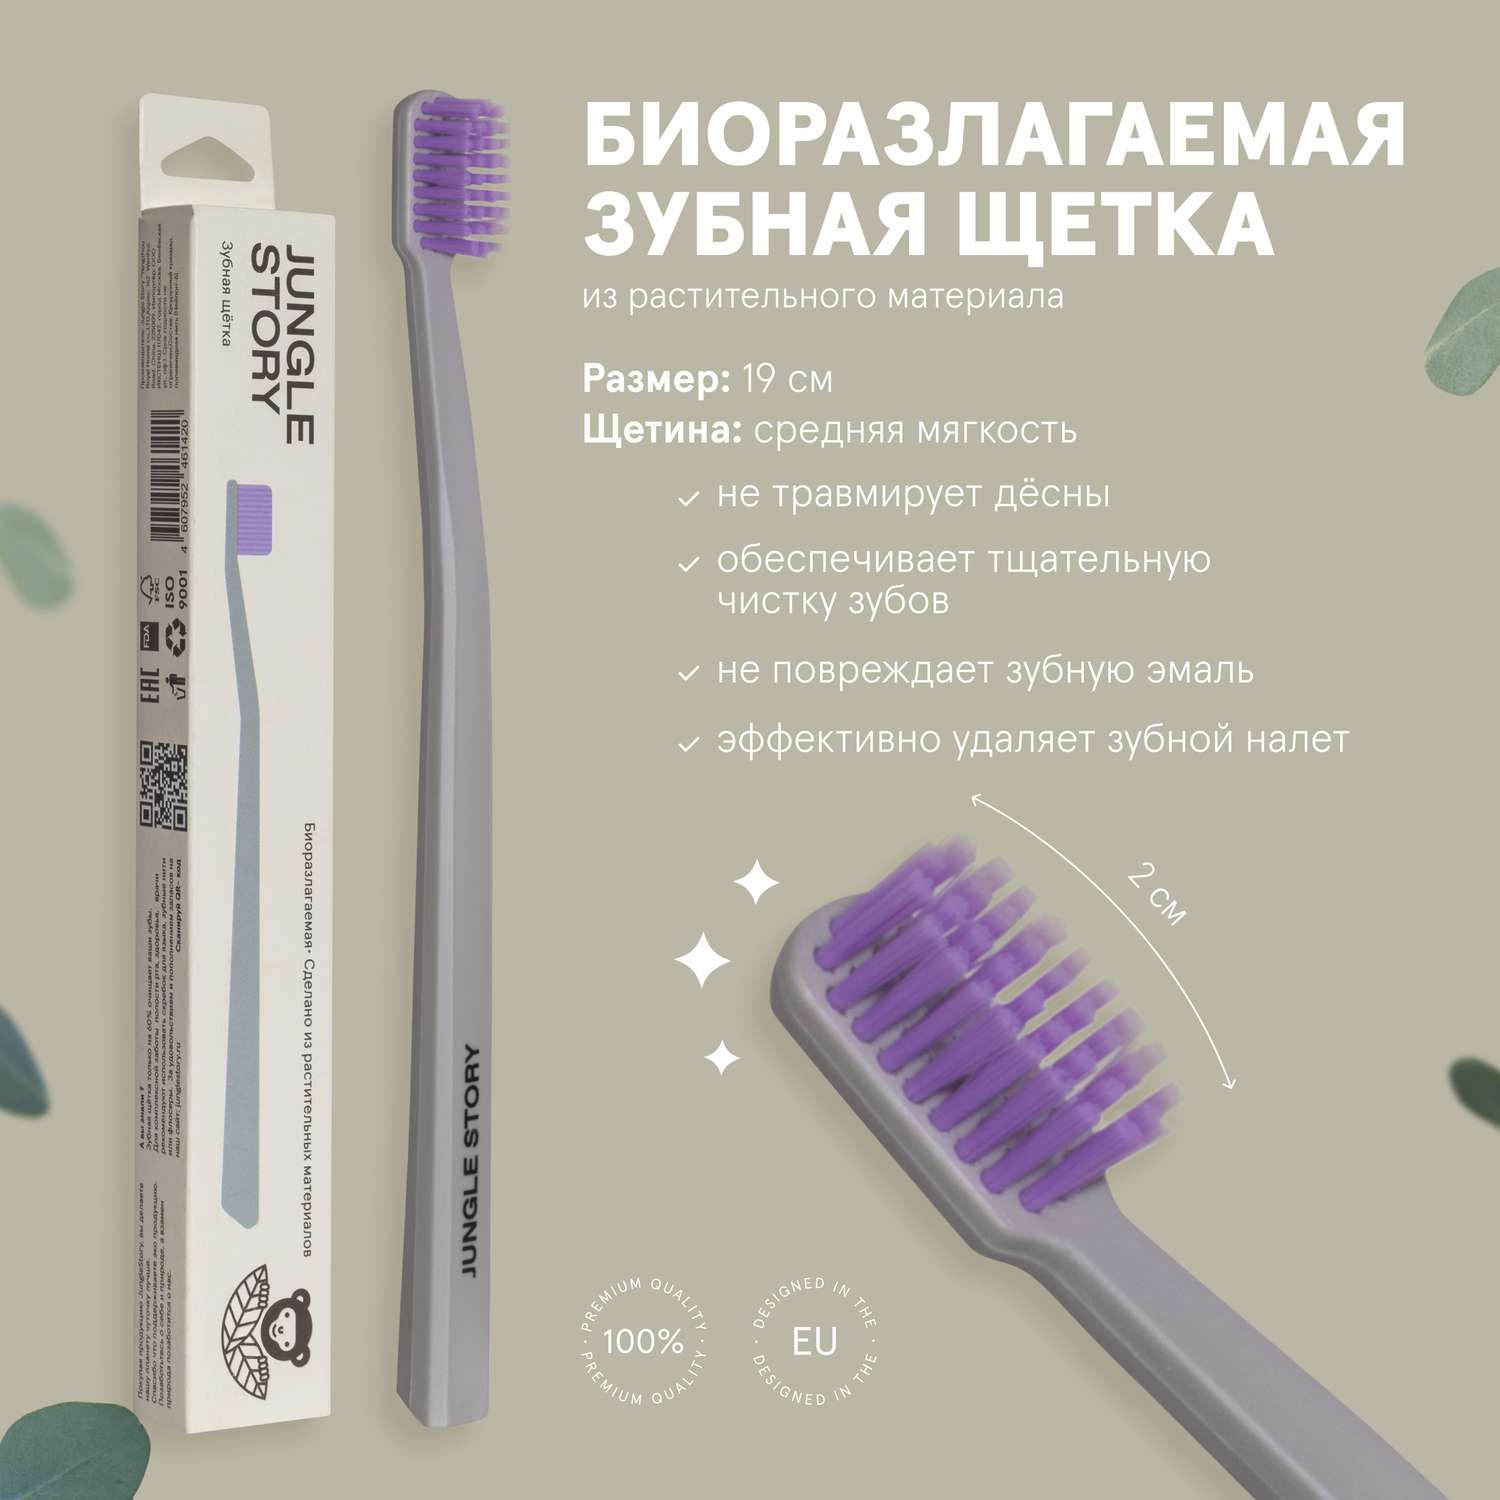 Зубная щётка Jungle Story биоразлагаемая из растительного материала матовая серо-фиолетовая - фото 2